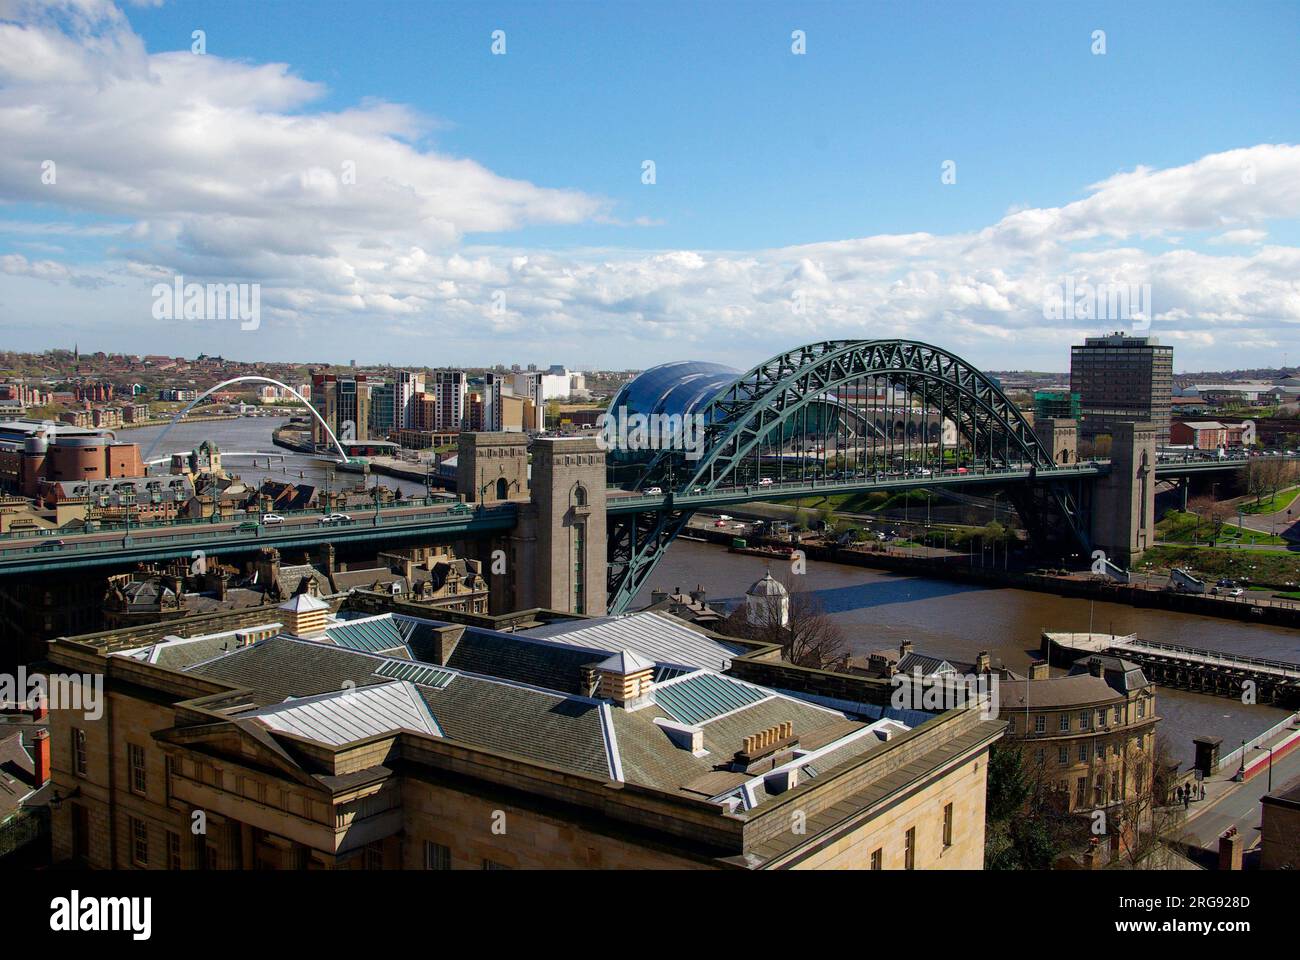 Die Tyne Bridge ist eine Hängebrücke mit Druckbogen, die Newcastle upon Tyne und Gateshead verbindet. Es wurde von der Ingenieurfirma Mott, Hay and Anderson entworfen, die später die Forth Road Bridge entwarf, und wurde von Dorman Long und Co. Von Middlesbrough gebaut. Es wurde offiziell am 10. Oktober 1928 von König George V. eröffnet Stockfoto